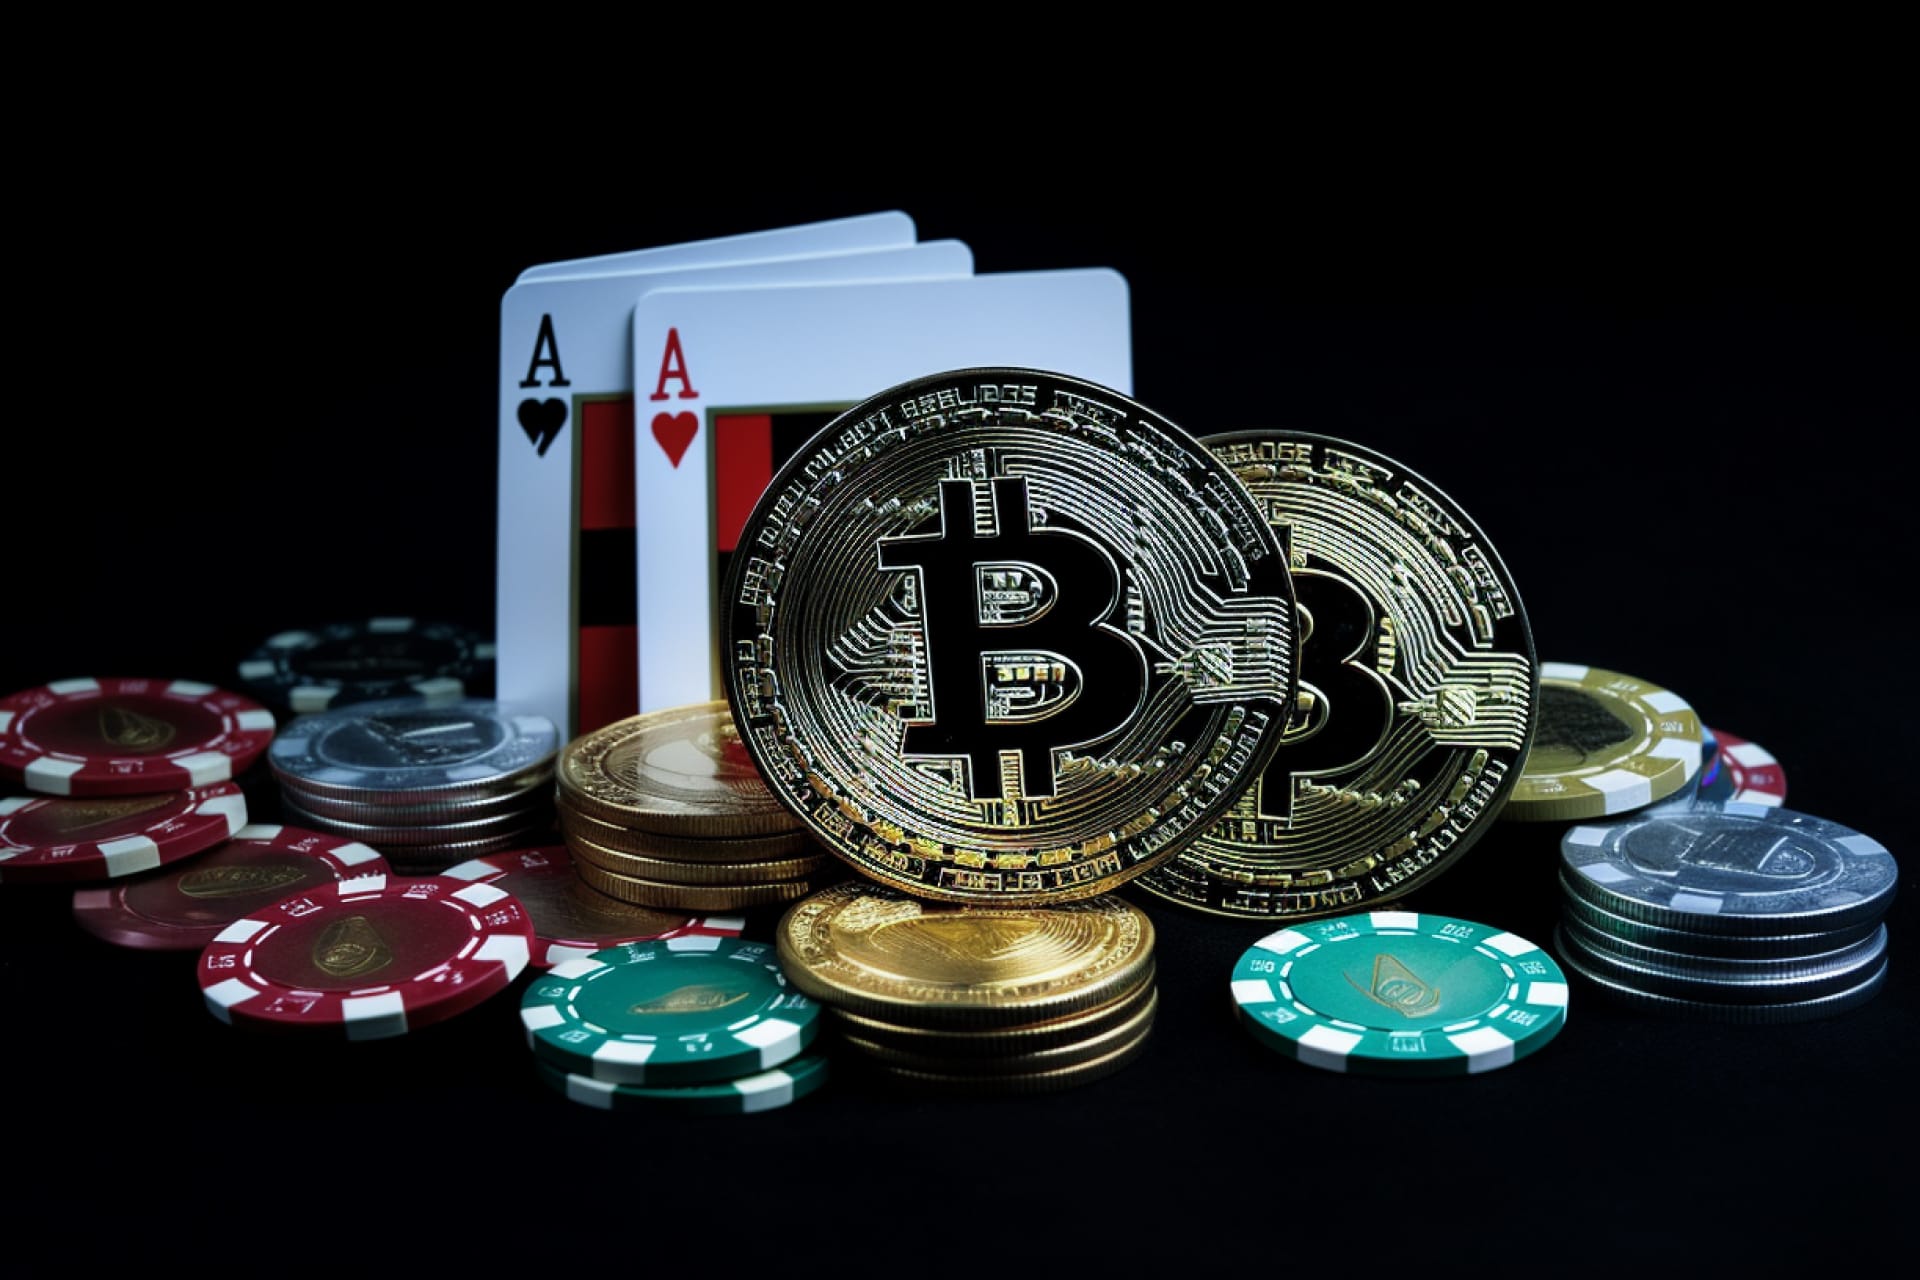 Casino Online Bitcoin en 2023 - Predicciones